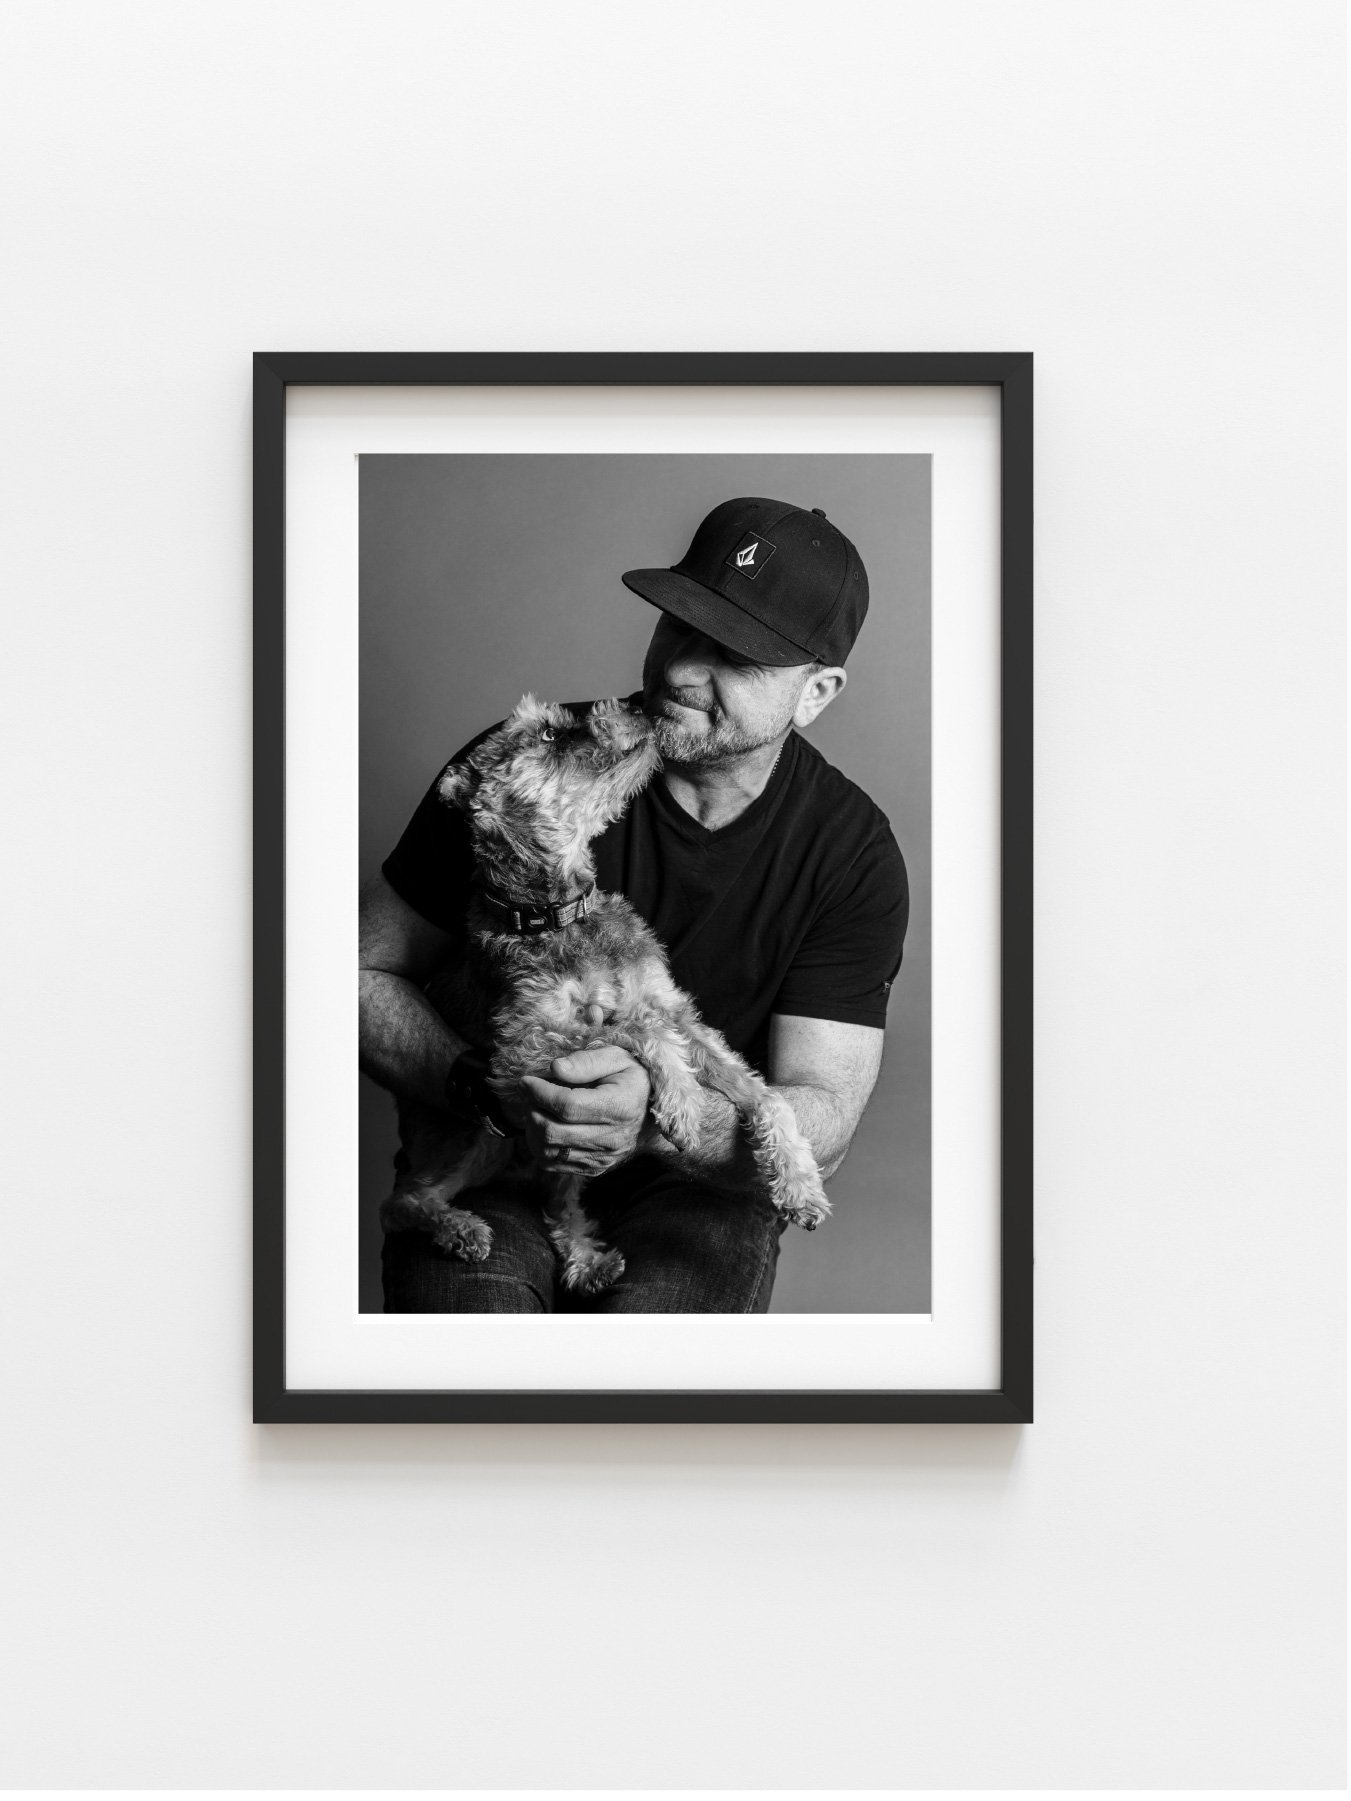 Human + Friend: Family Pet Portraits